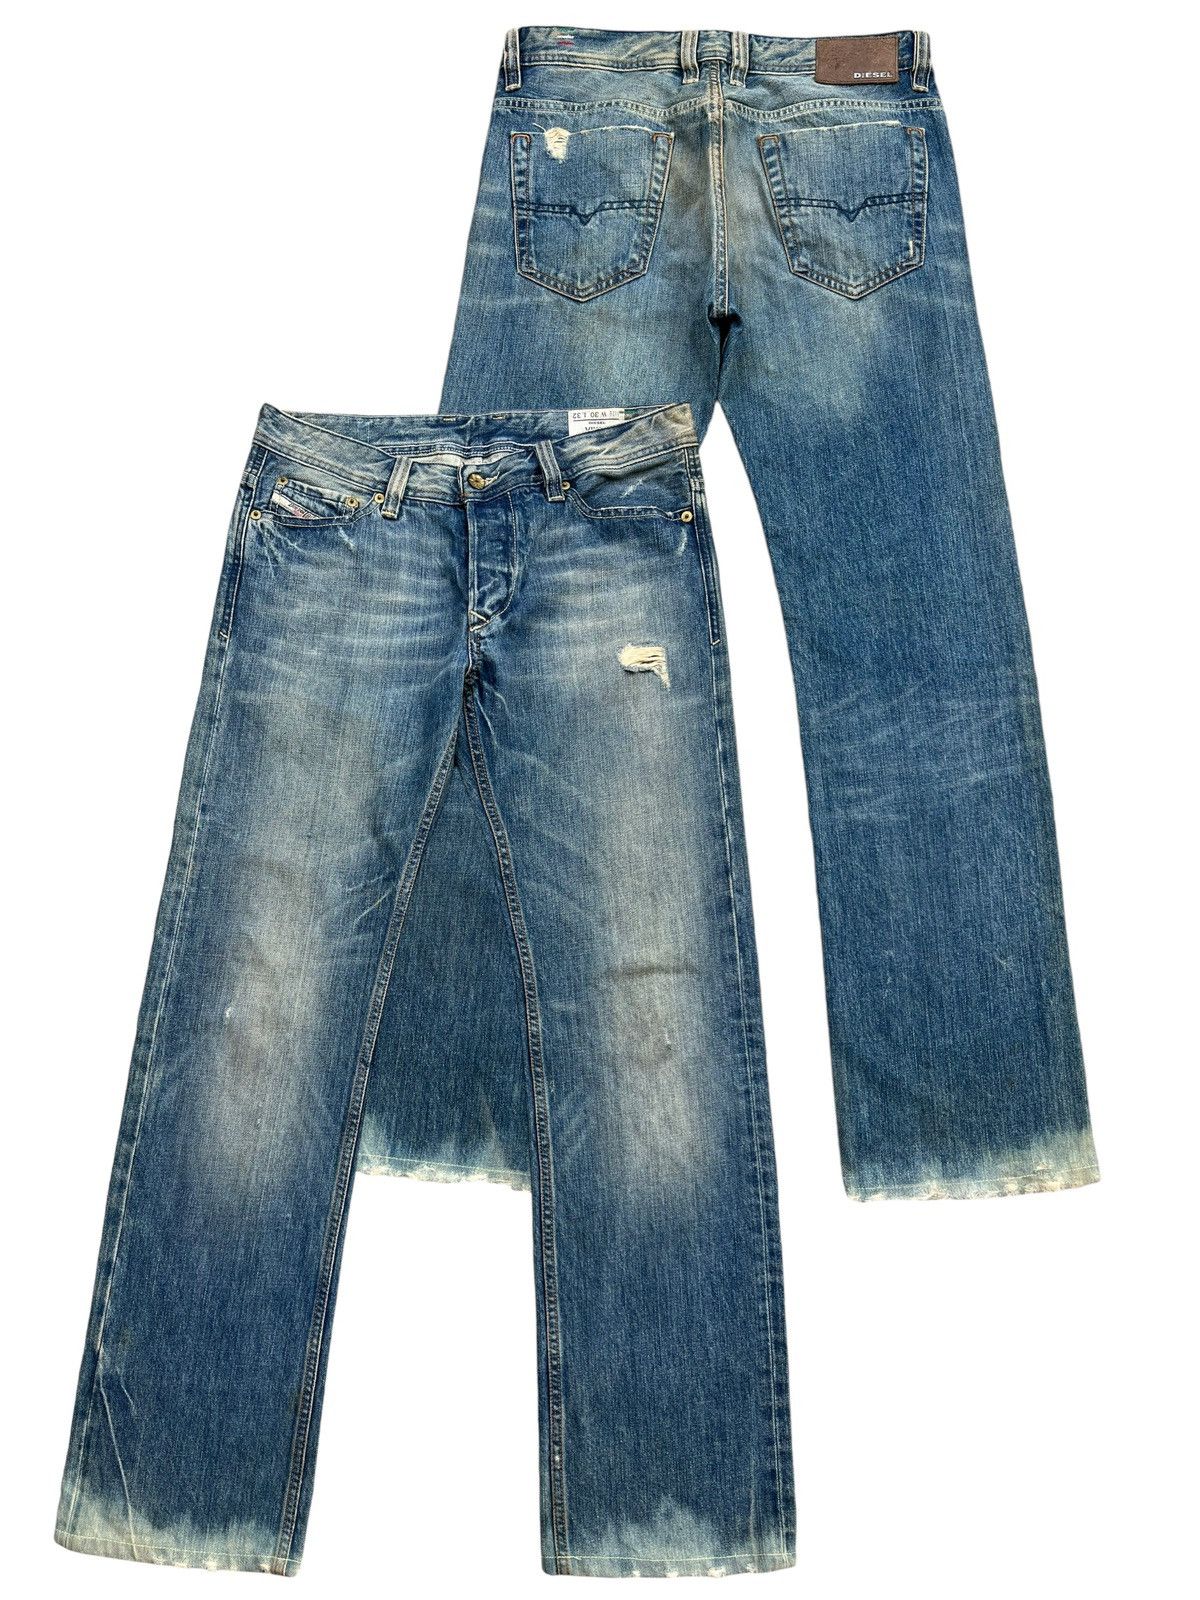 Diesel Mudwash Distressed Straightcut Denim Jeans 33x32 - 1